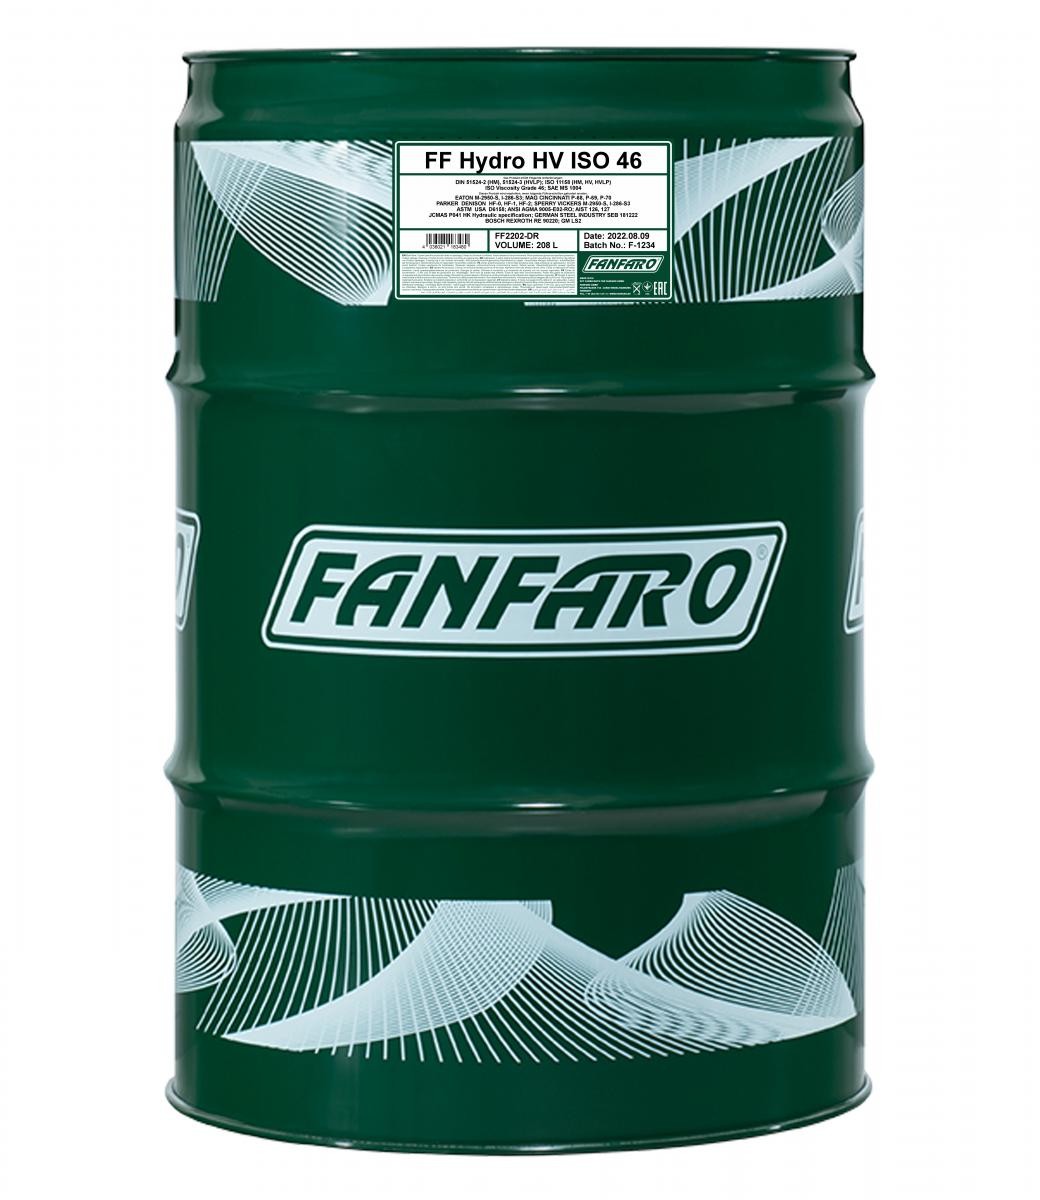 FANFARO HYDRO HV Inhalt: 208l Hydrauliköl FF2202-DR kaufen